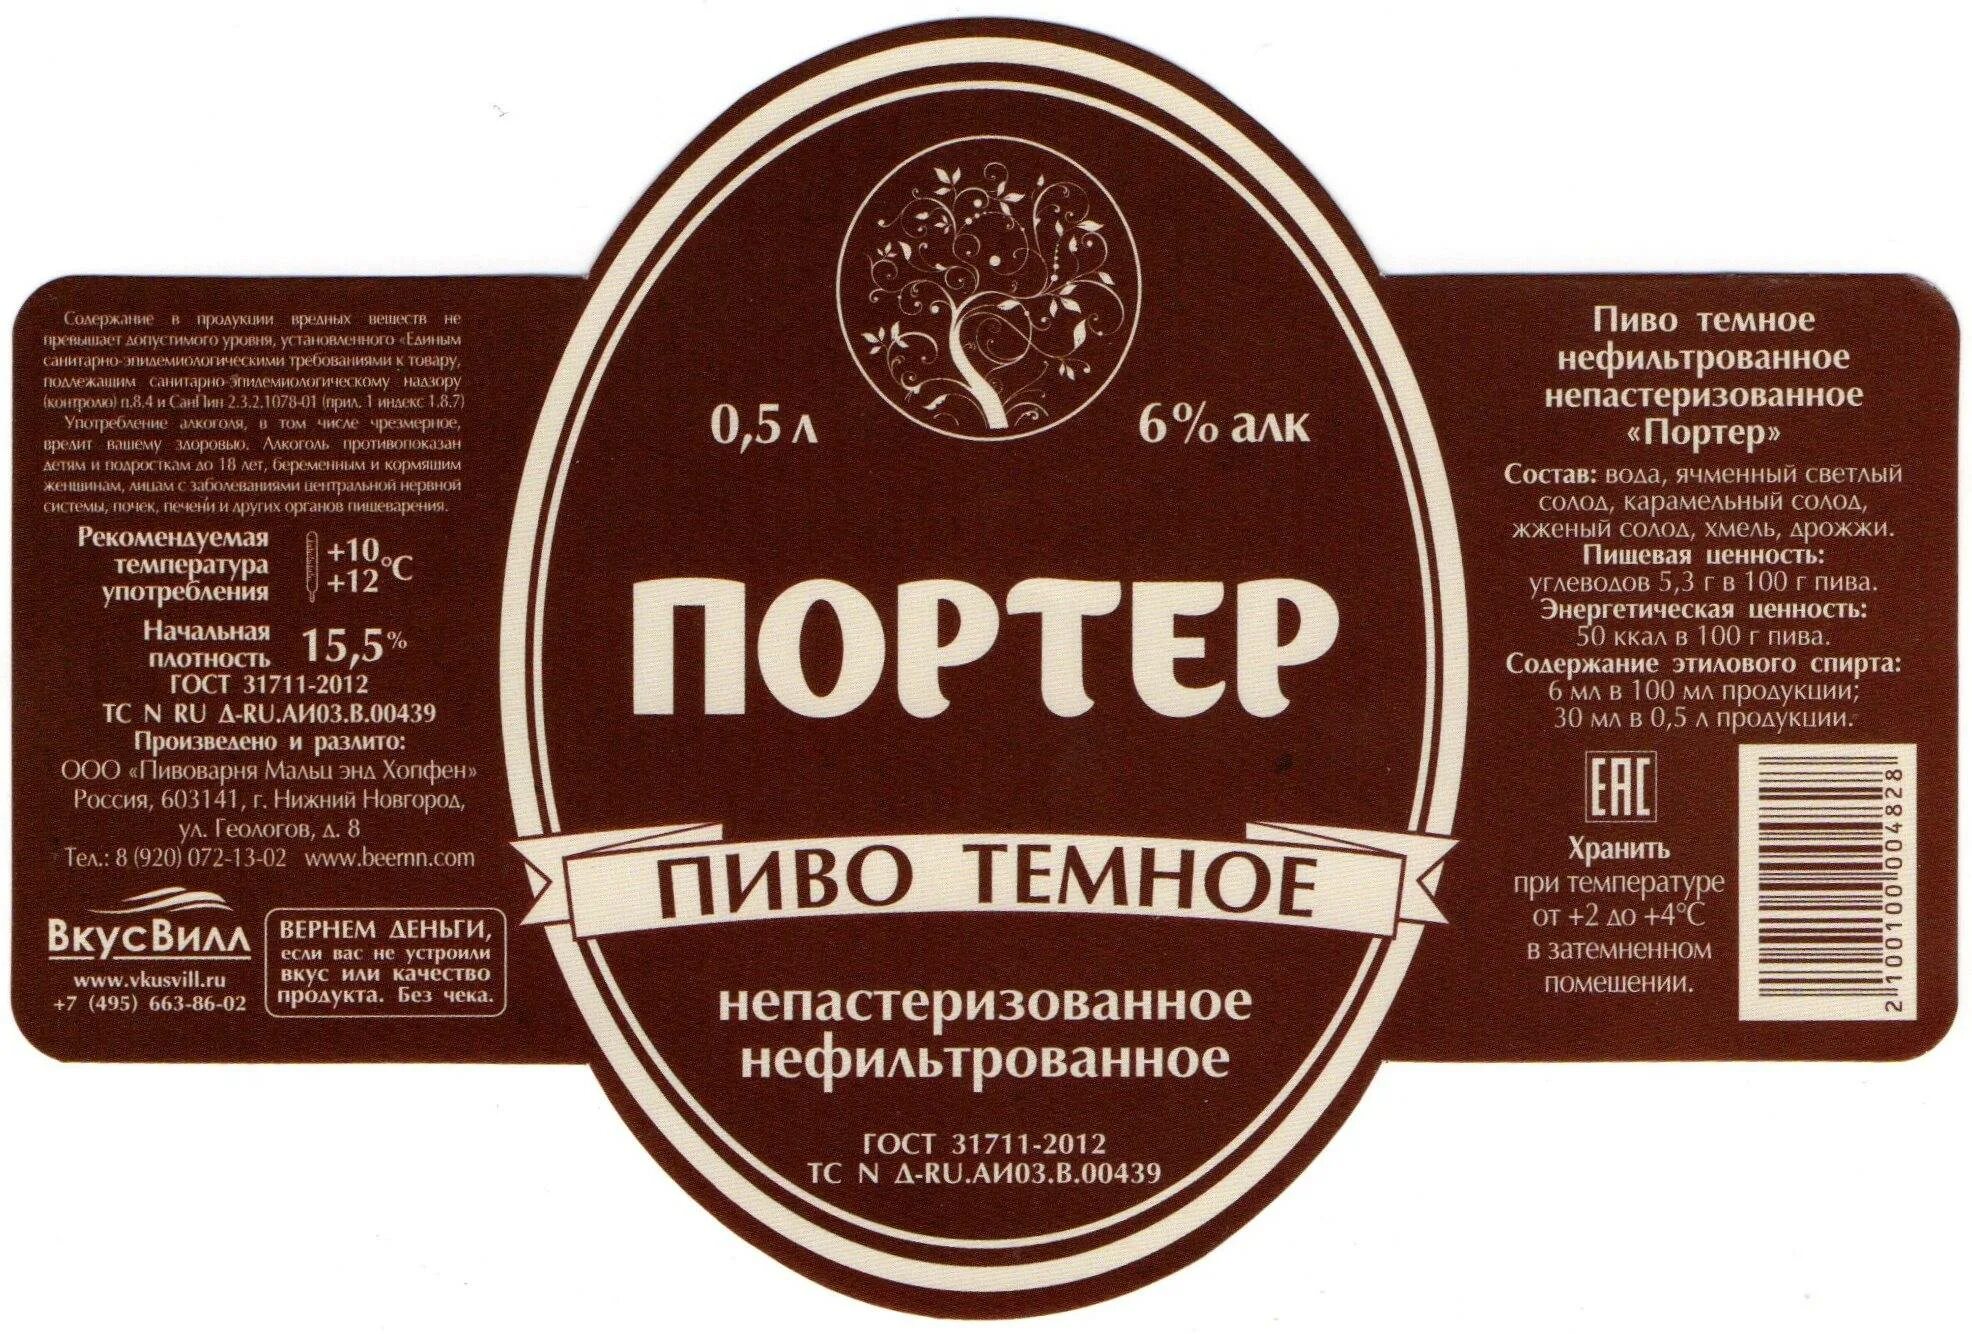 Пиво темное "Портер" 1822 Лысковский. Porter пиво Лысково 0,5. Этикетка «пиво».